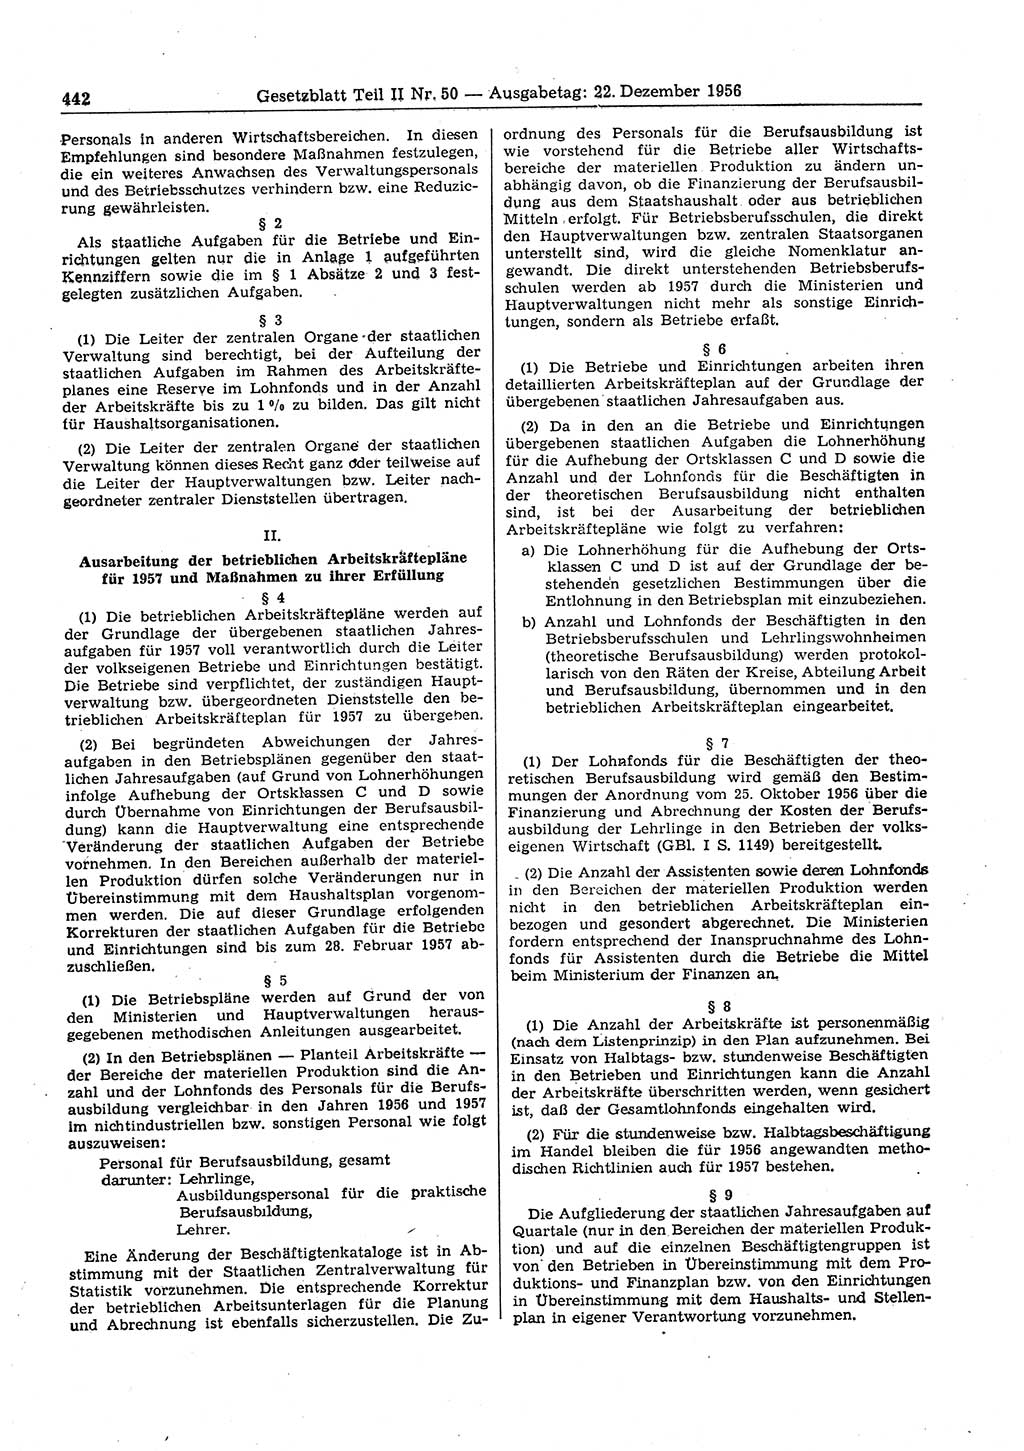 Gesetzblatt (GBl.) der Deutschen Demokratischen Republik (DDR) Teil ⅠⅠ 1956, Seite 442 (GBl. DDR ⅠⅠ 1956, S. 442)